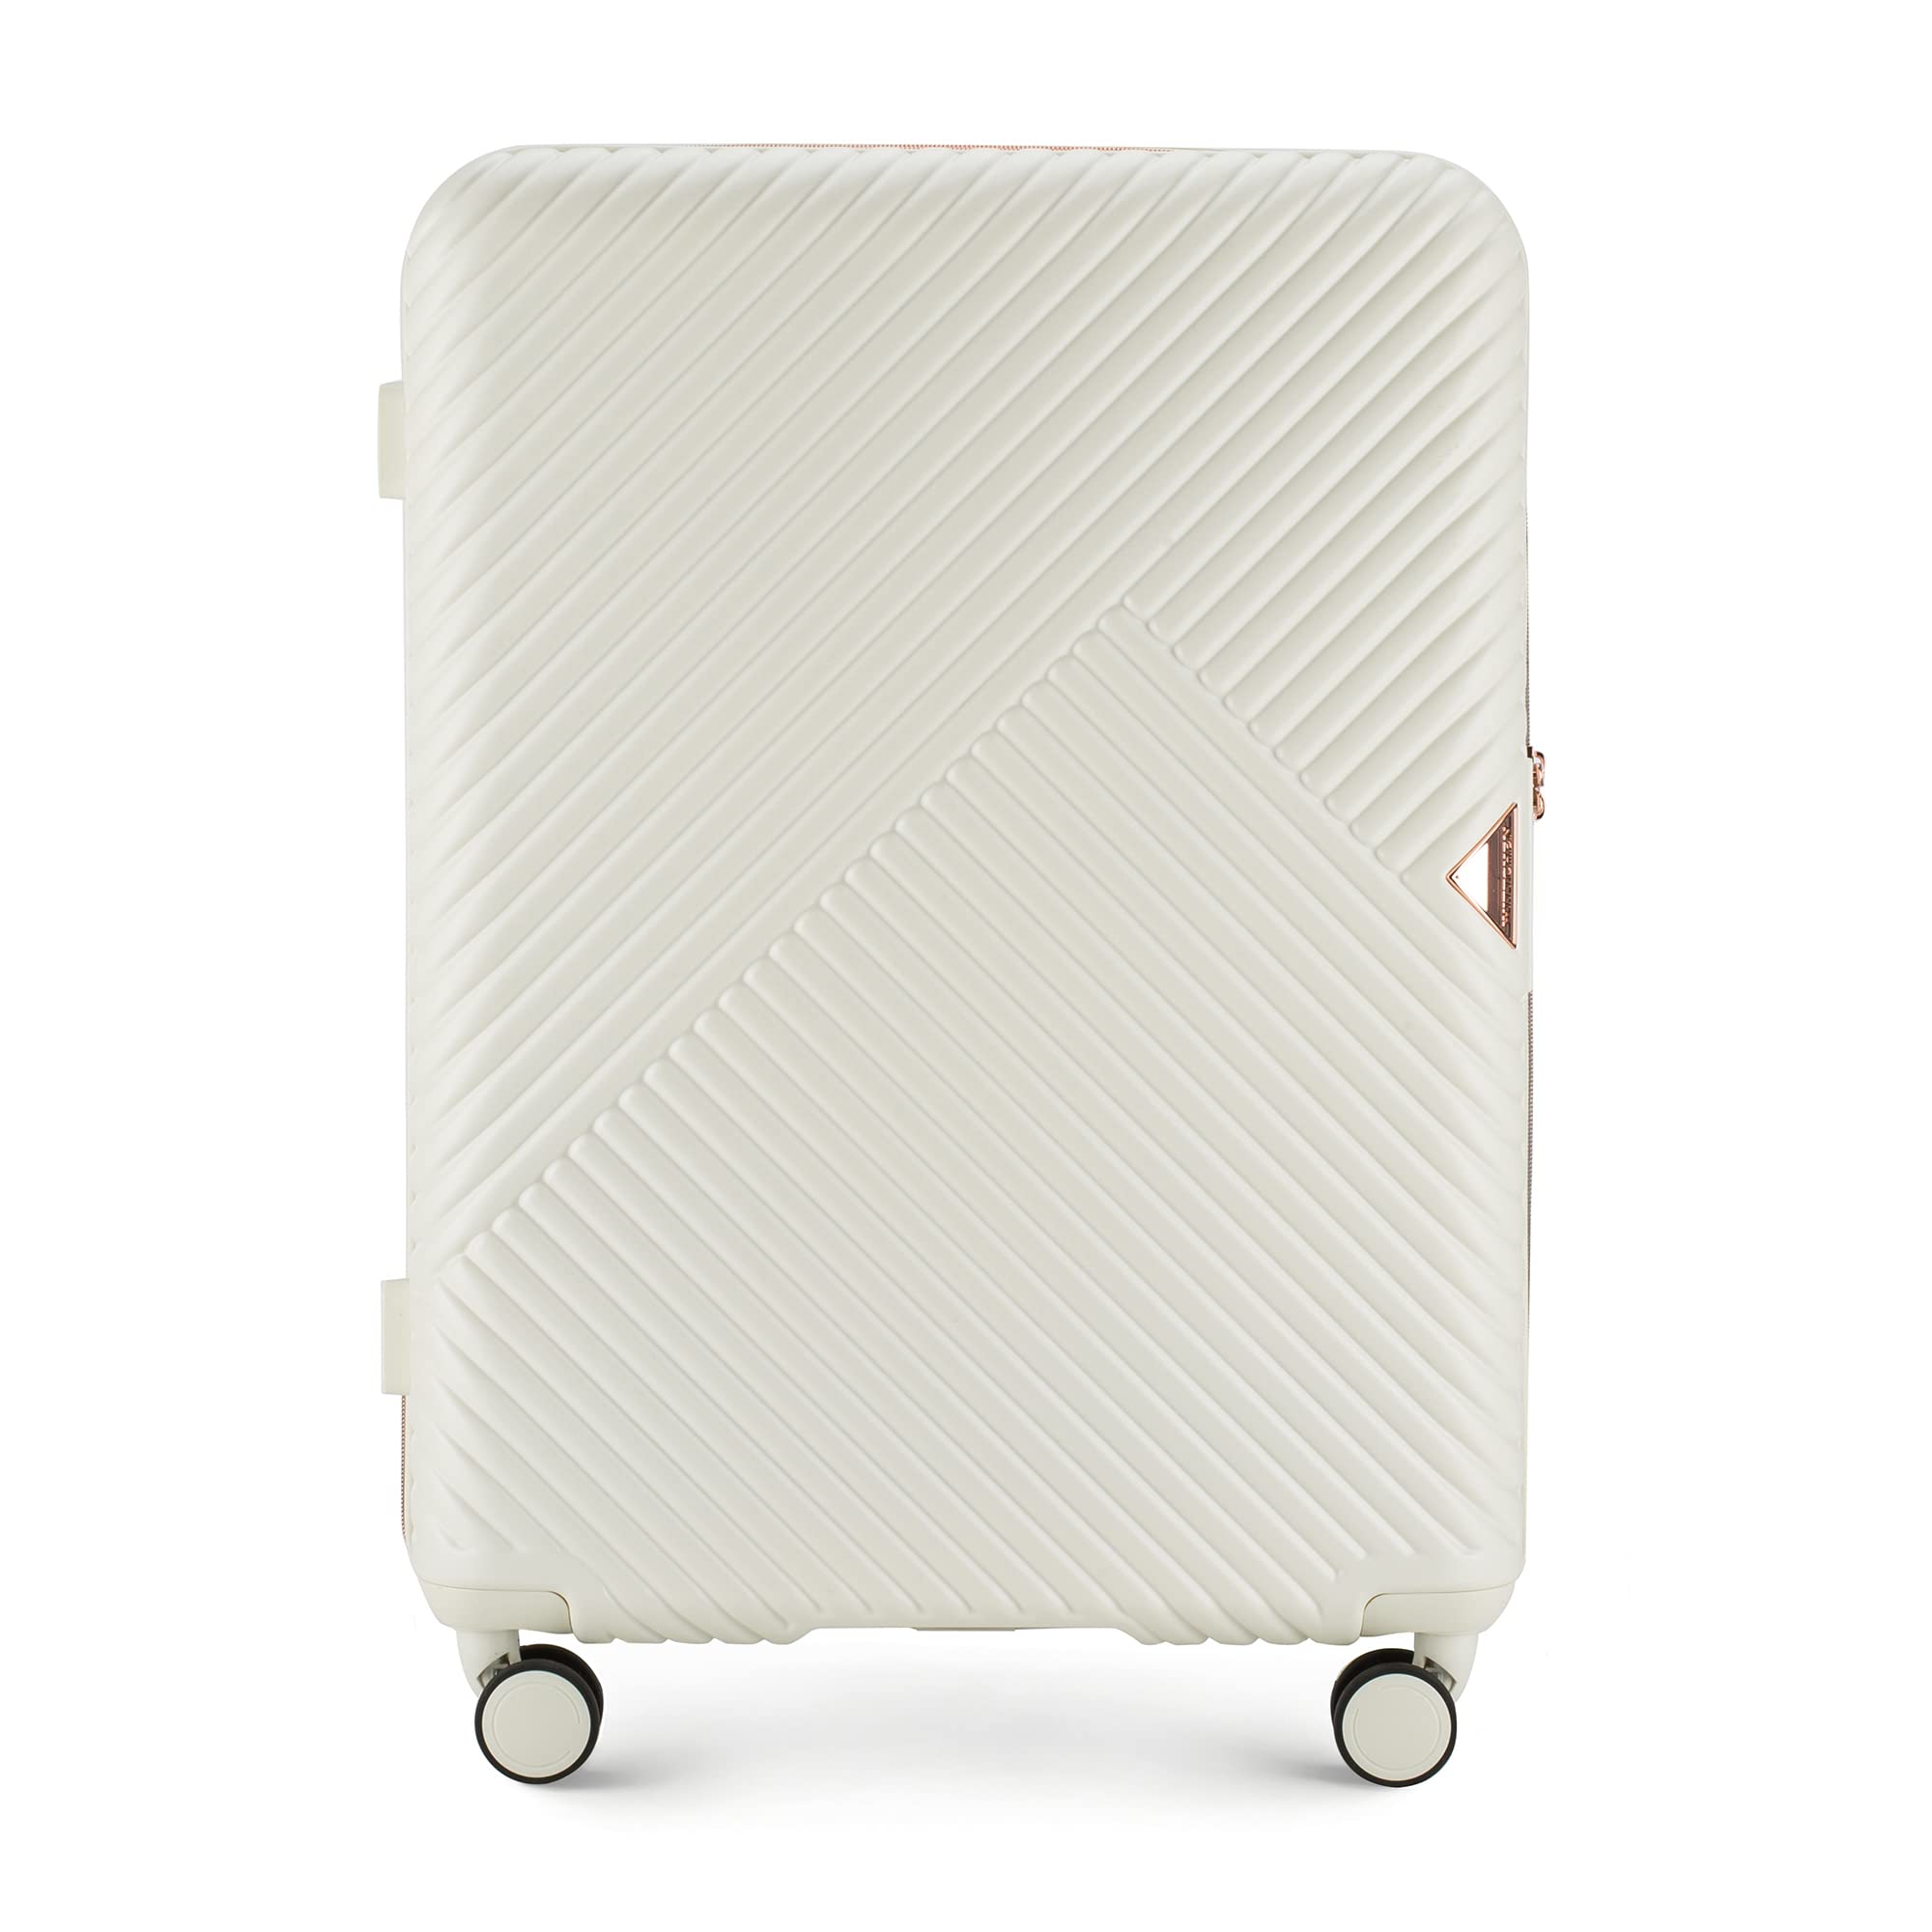 WITTCHEN Mittlerer Koffer Material Polycarbonate Hartschalen Trolley 4 Rollen Kombinationsschloss TSA Größe M Weiß